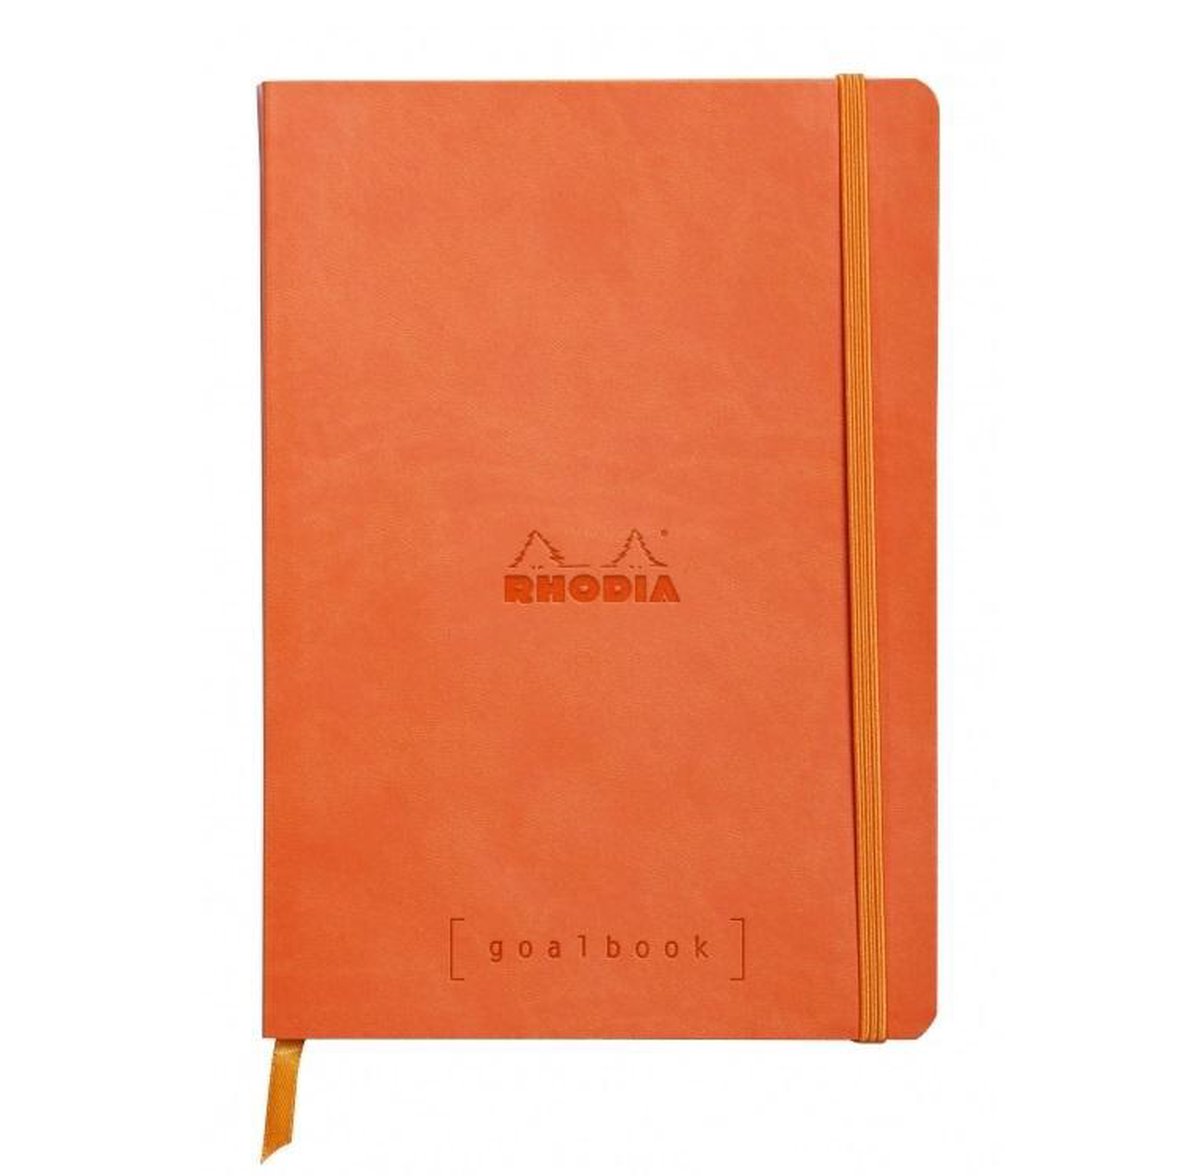 Rhodia Goalbook Bullet Journal A5 Tangerine